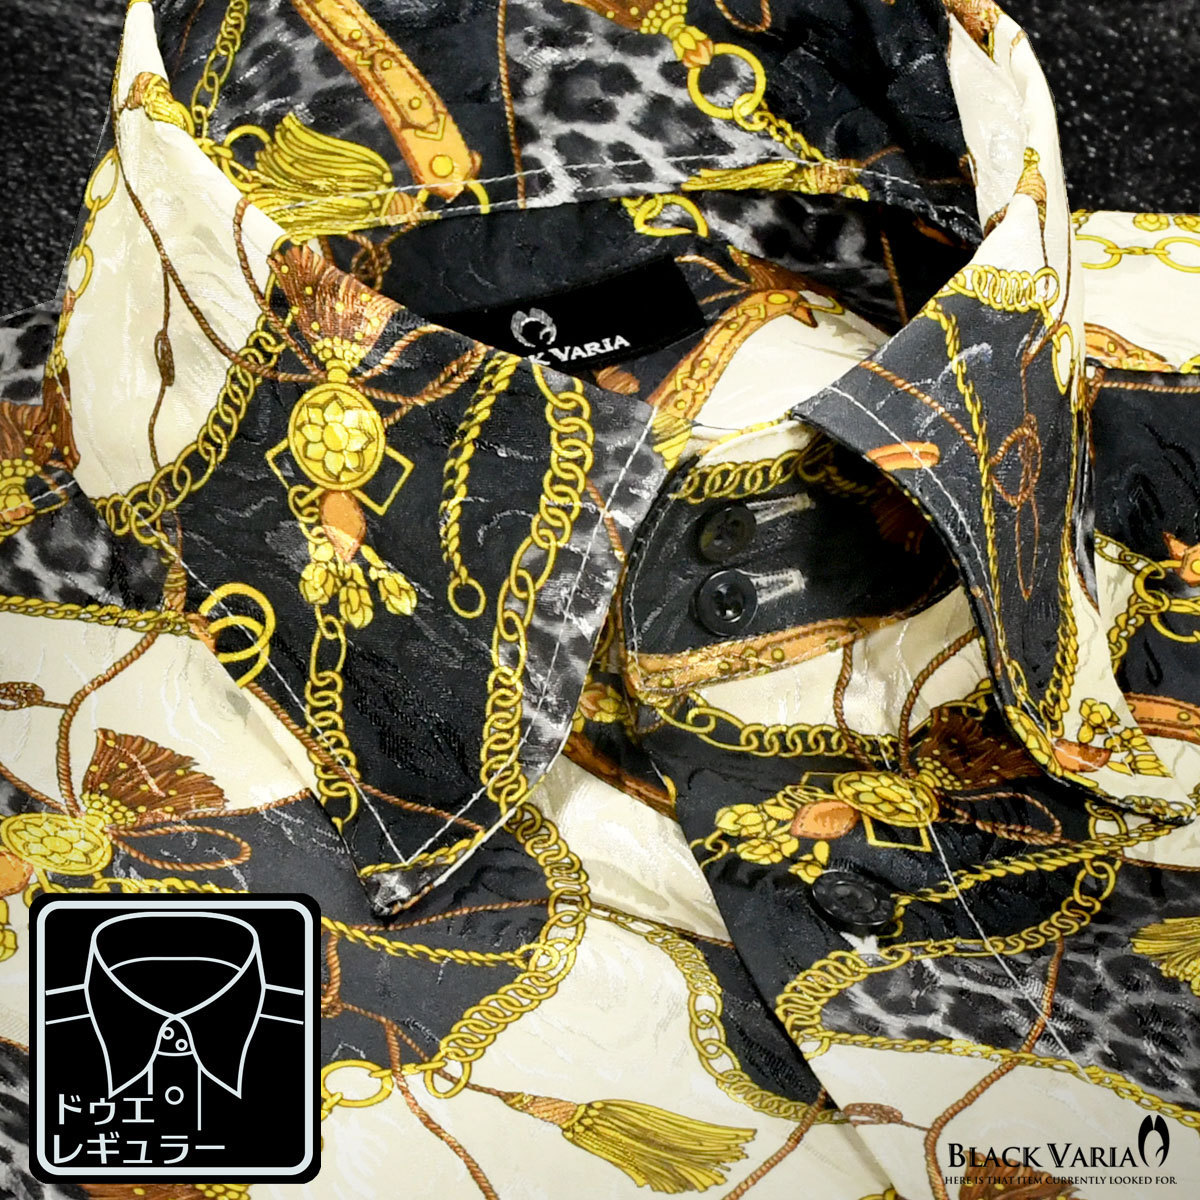 6#a181718-gobk [SALE] ブラックバリア ドゥエボットーニ 豹レオパード鎖柄 [レギュラーカラー]サテンシャツ メンズ(黒ゴールド金) M 衣装